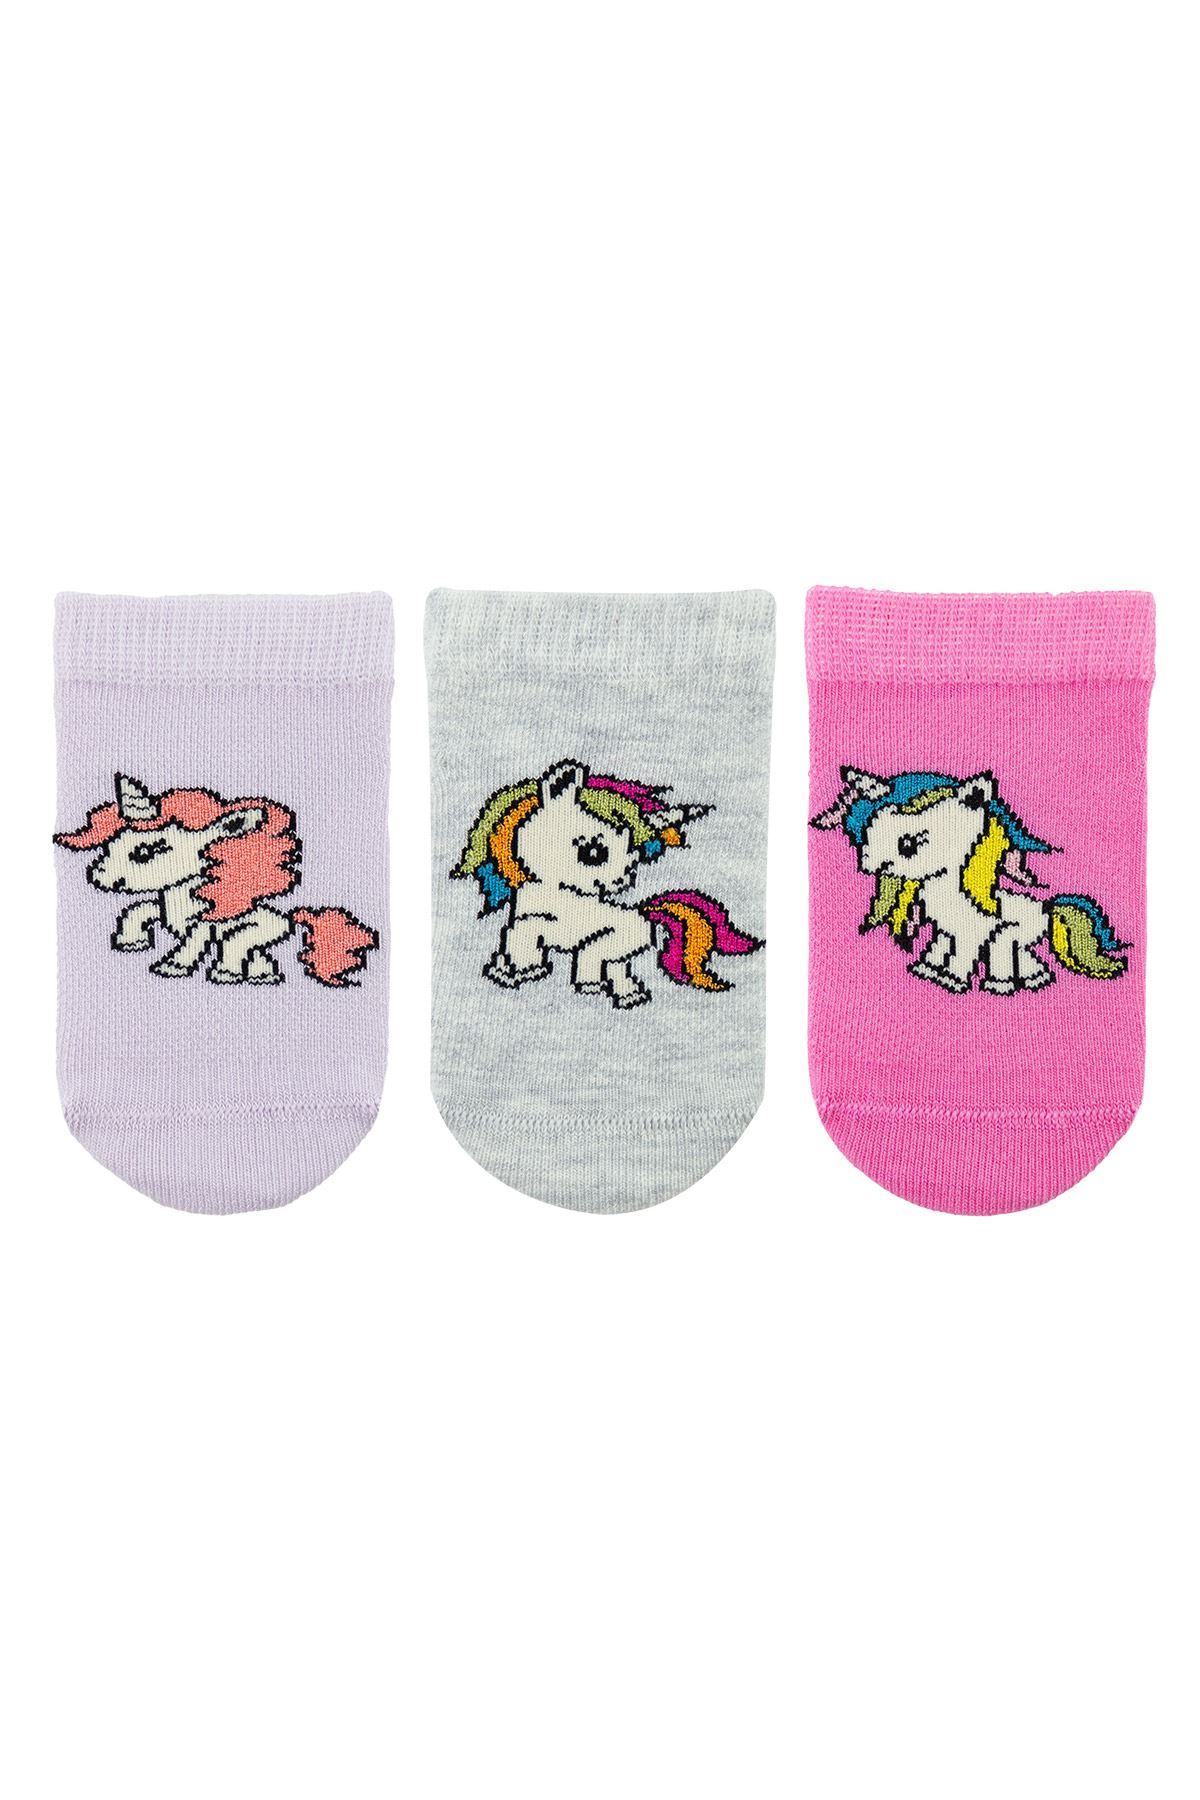 GIRL ANKLE SOCKS UNICORN PATTERNED | Buy Branded Wholesale Socks Online ...